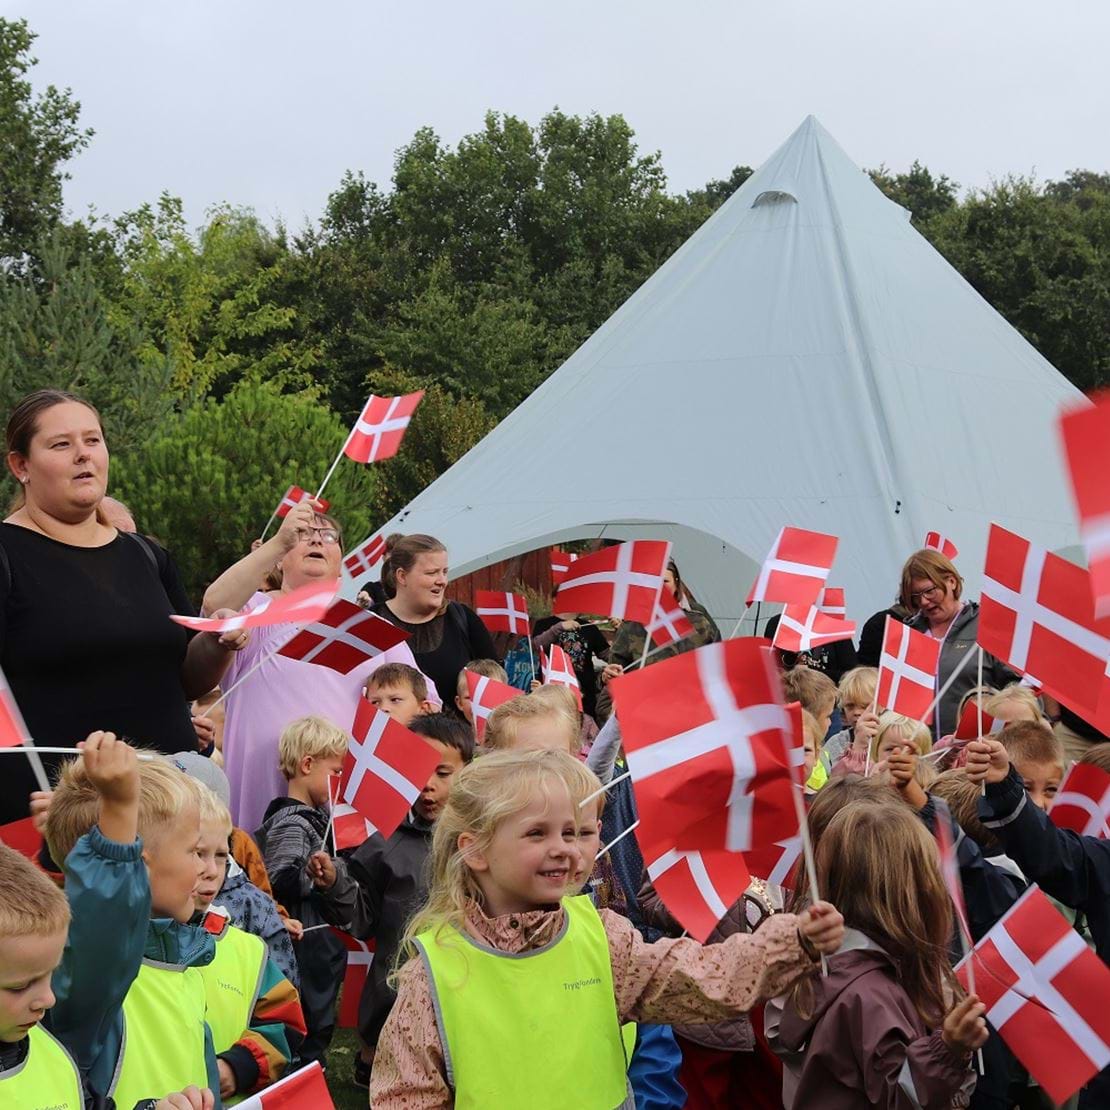 En stor mængde børn og voksne står med flag i hånden og synger fødselsdagssang.